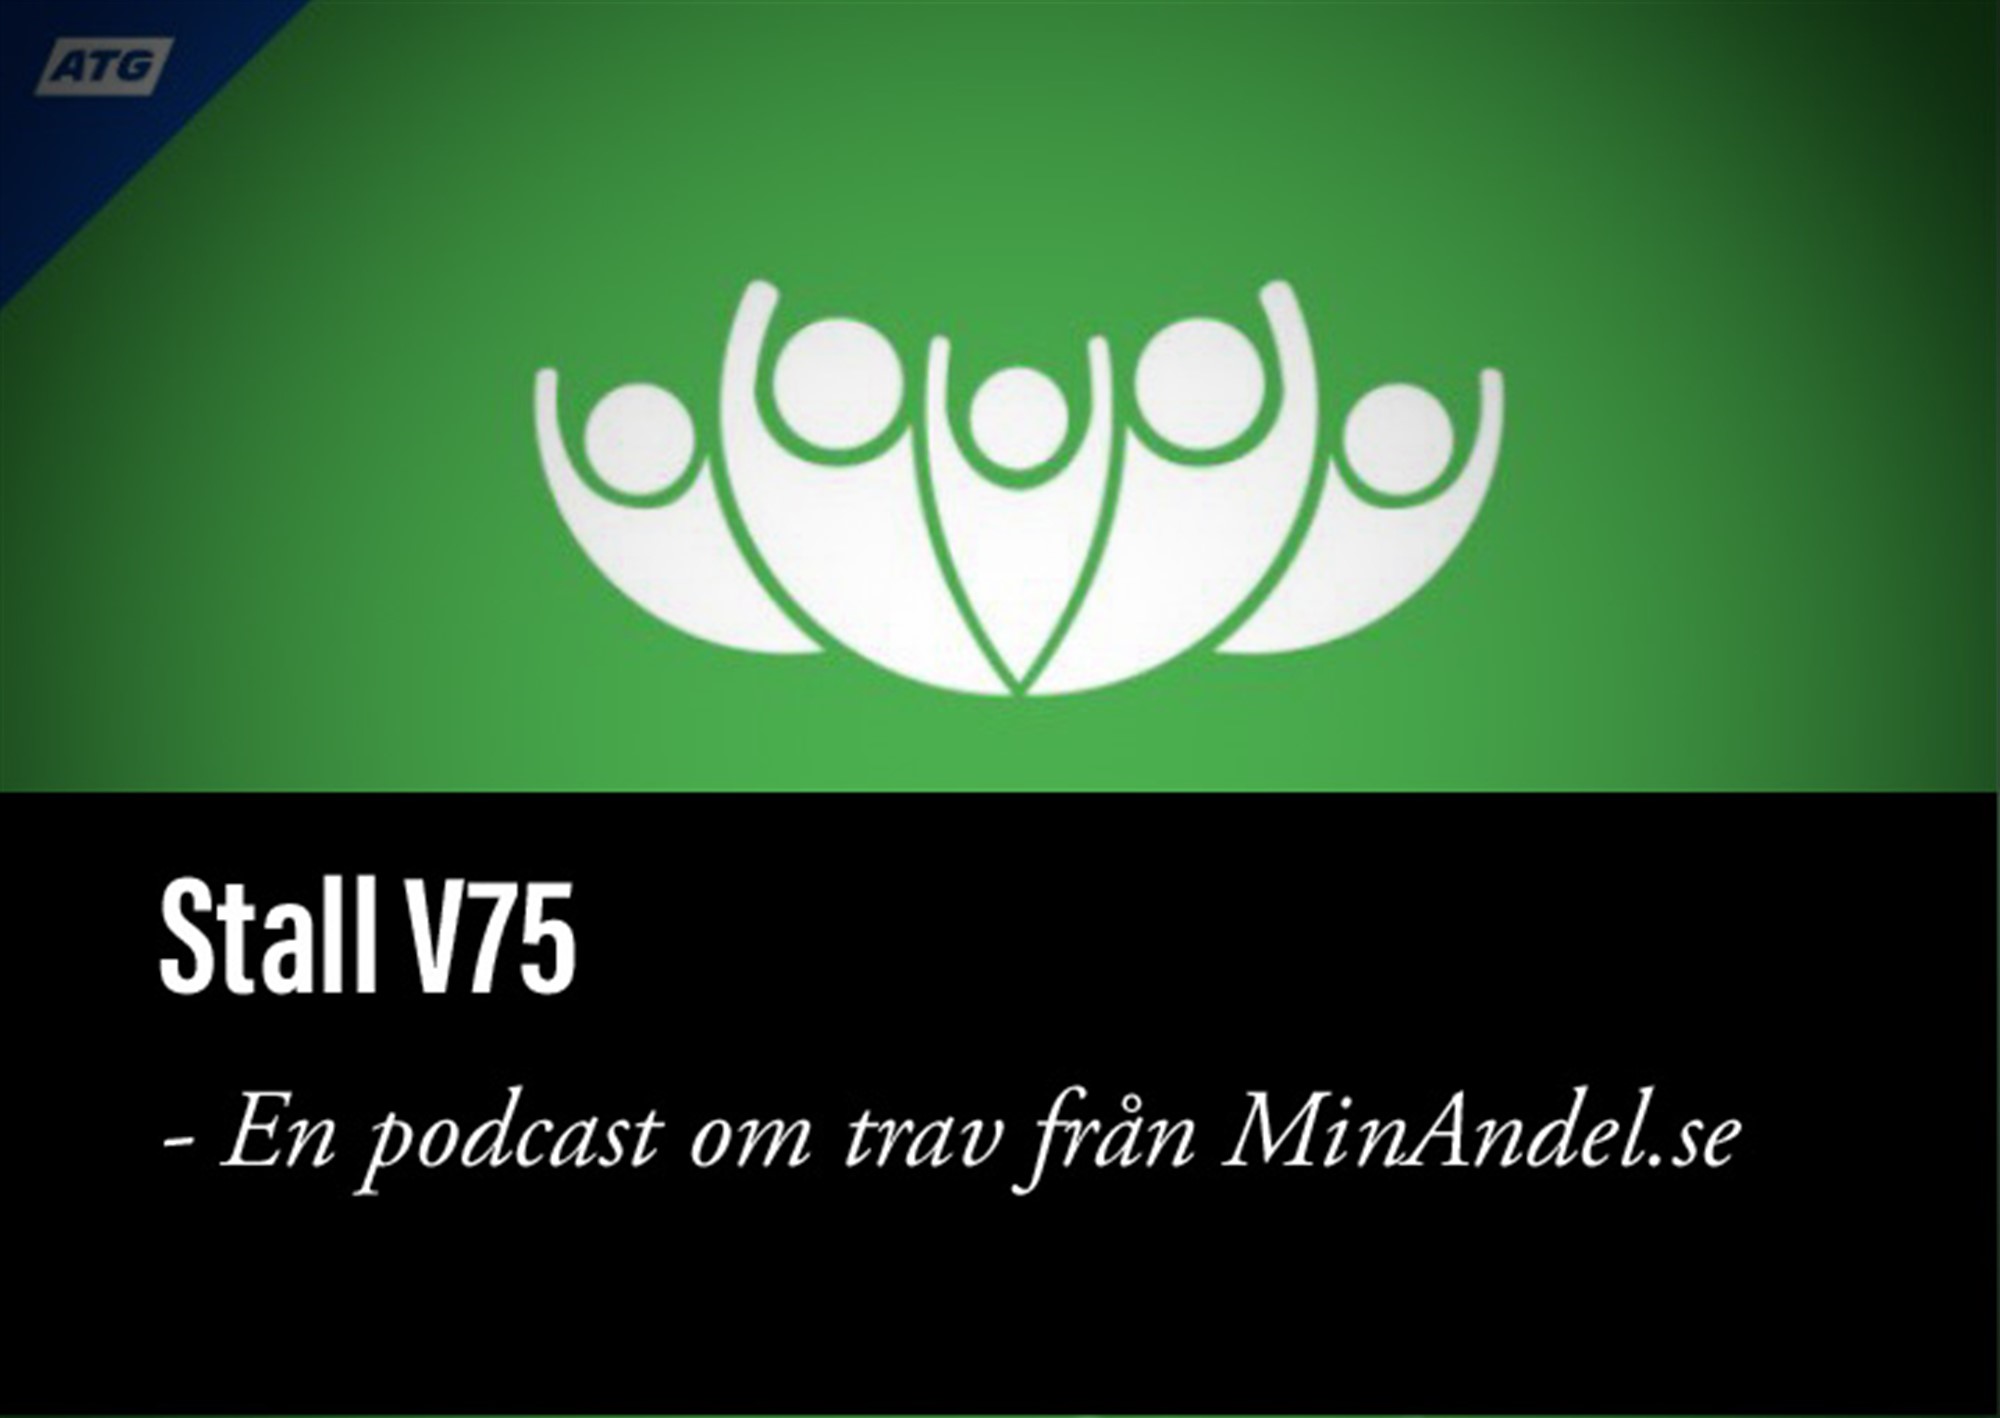 V75 23/12 Axevalla. Presenteras av MinAndel.se